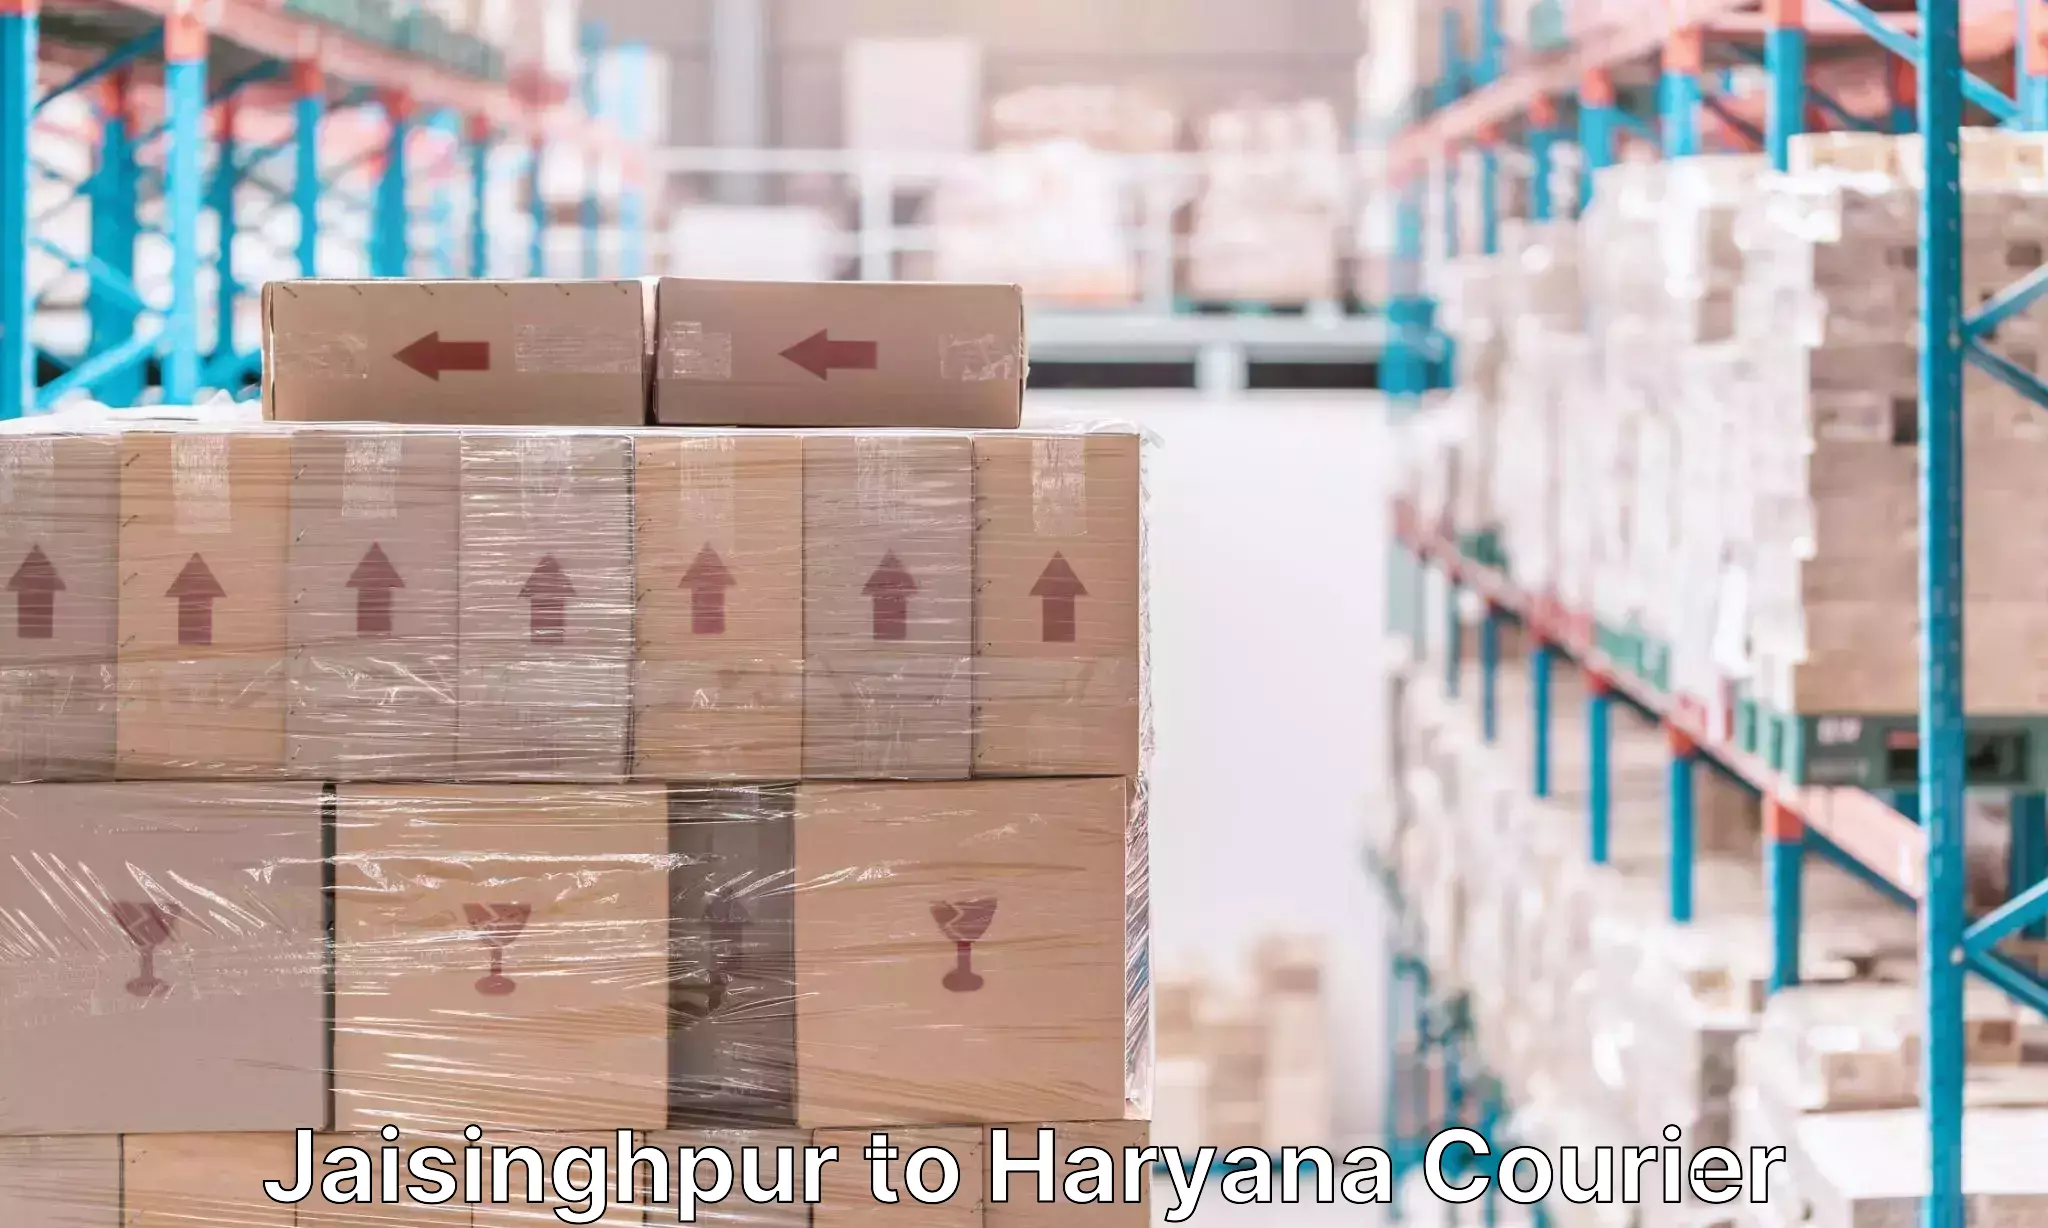 Baggage delivery technology in Jaisinghpur to Kurukshetra